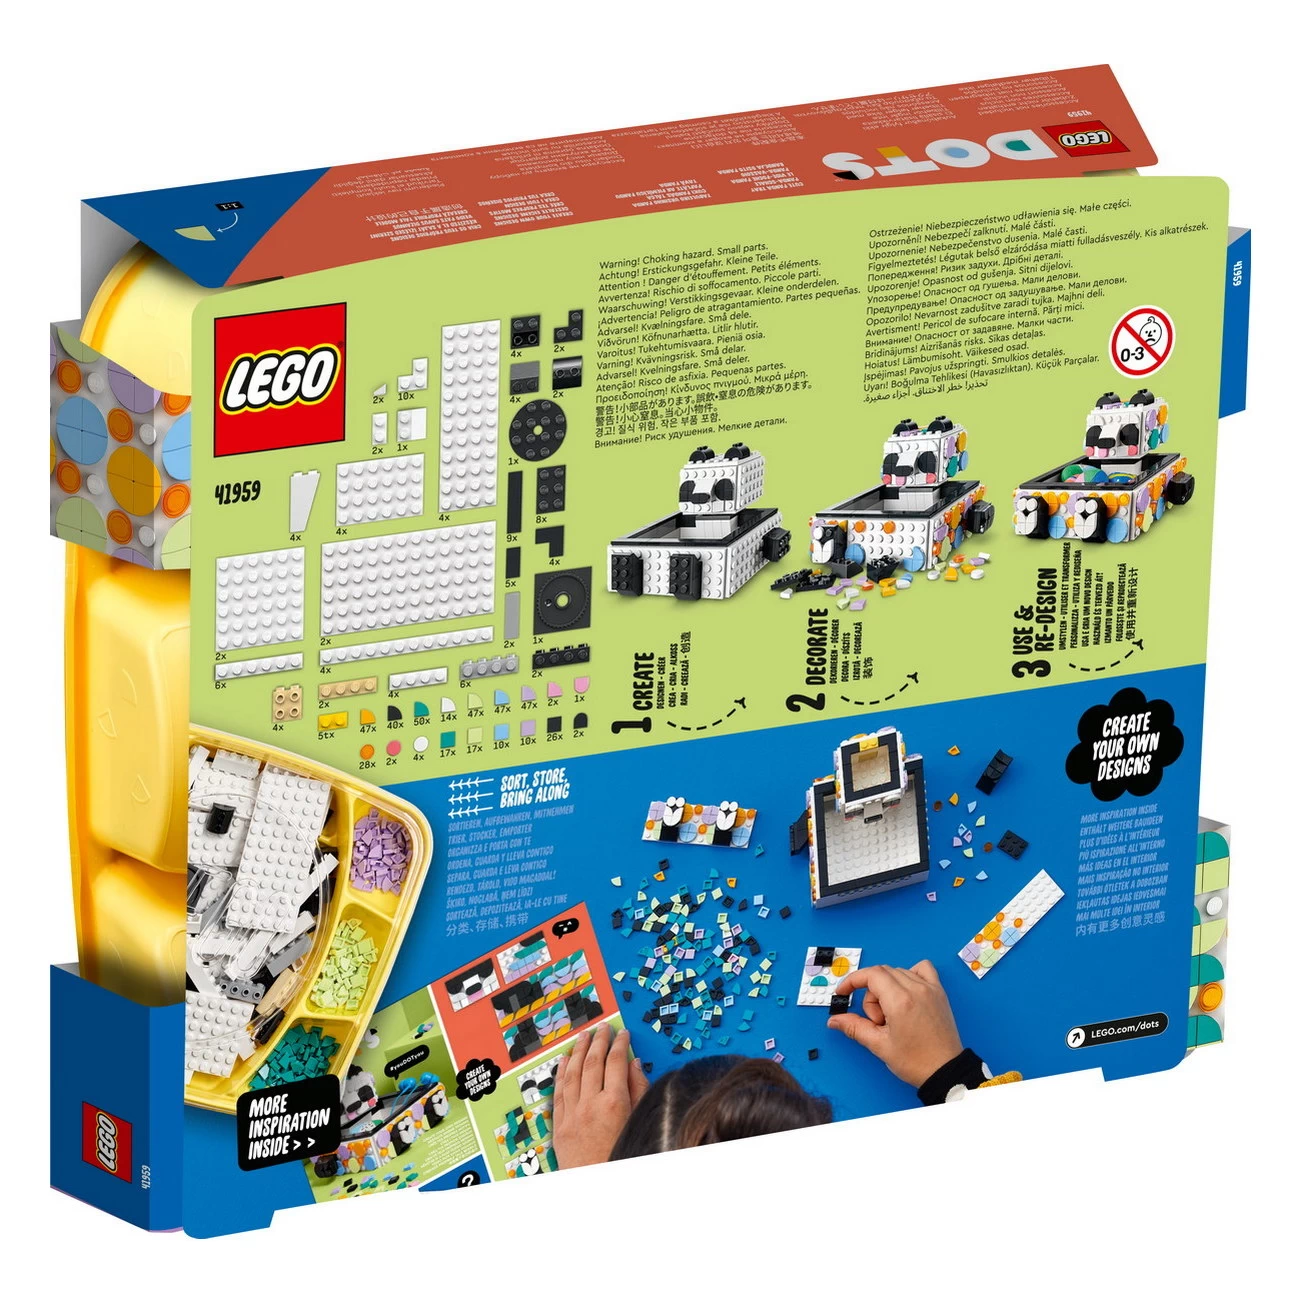 LEGO DOTs 41959 - Panda Ablageschale